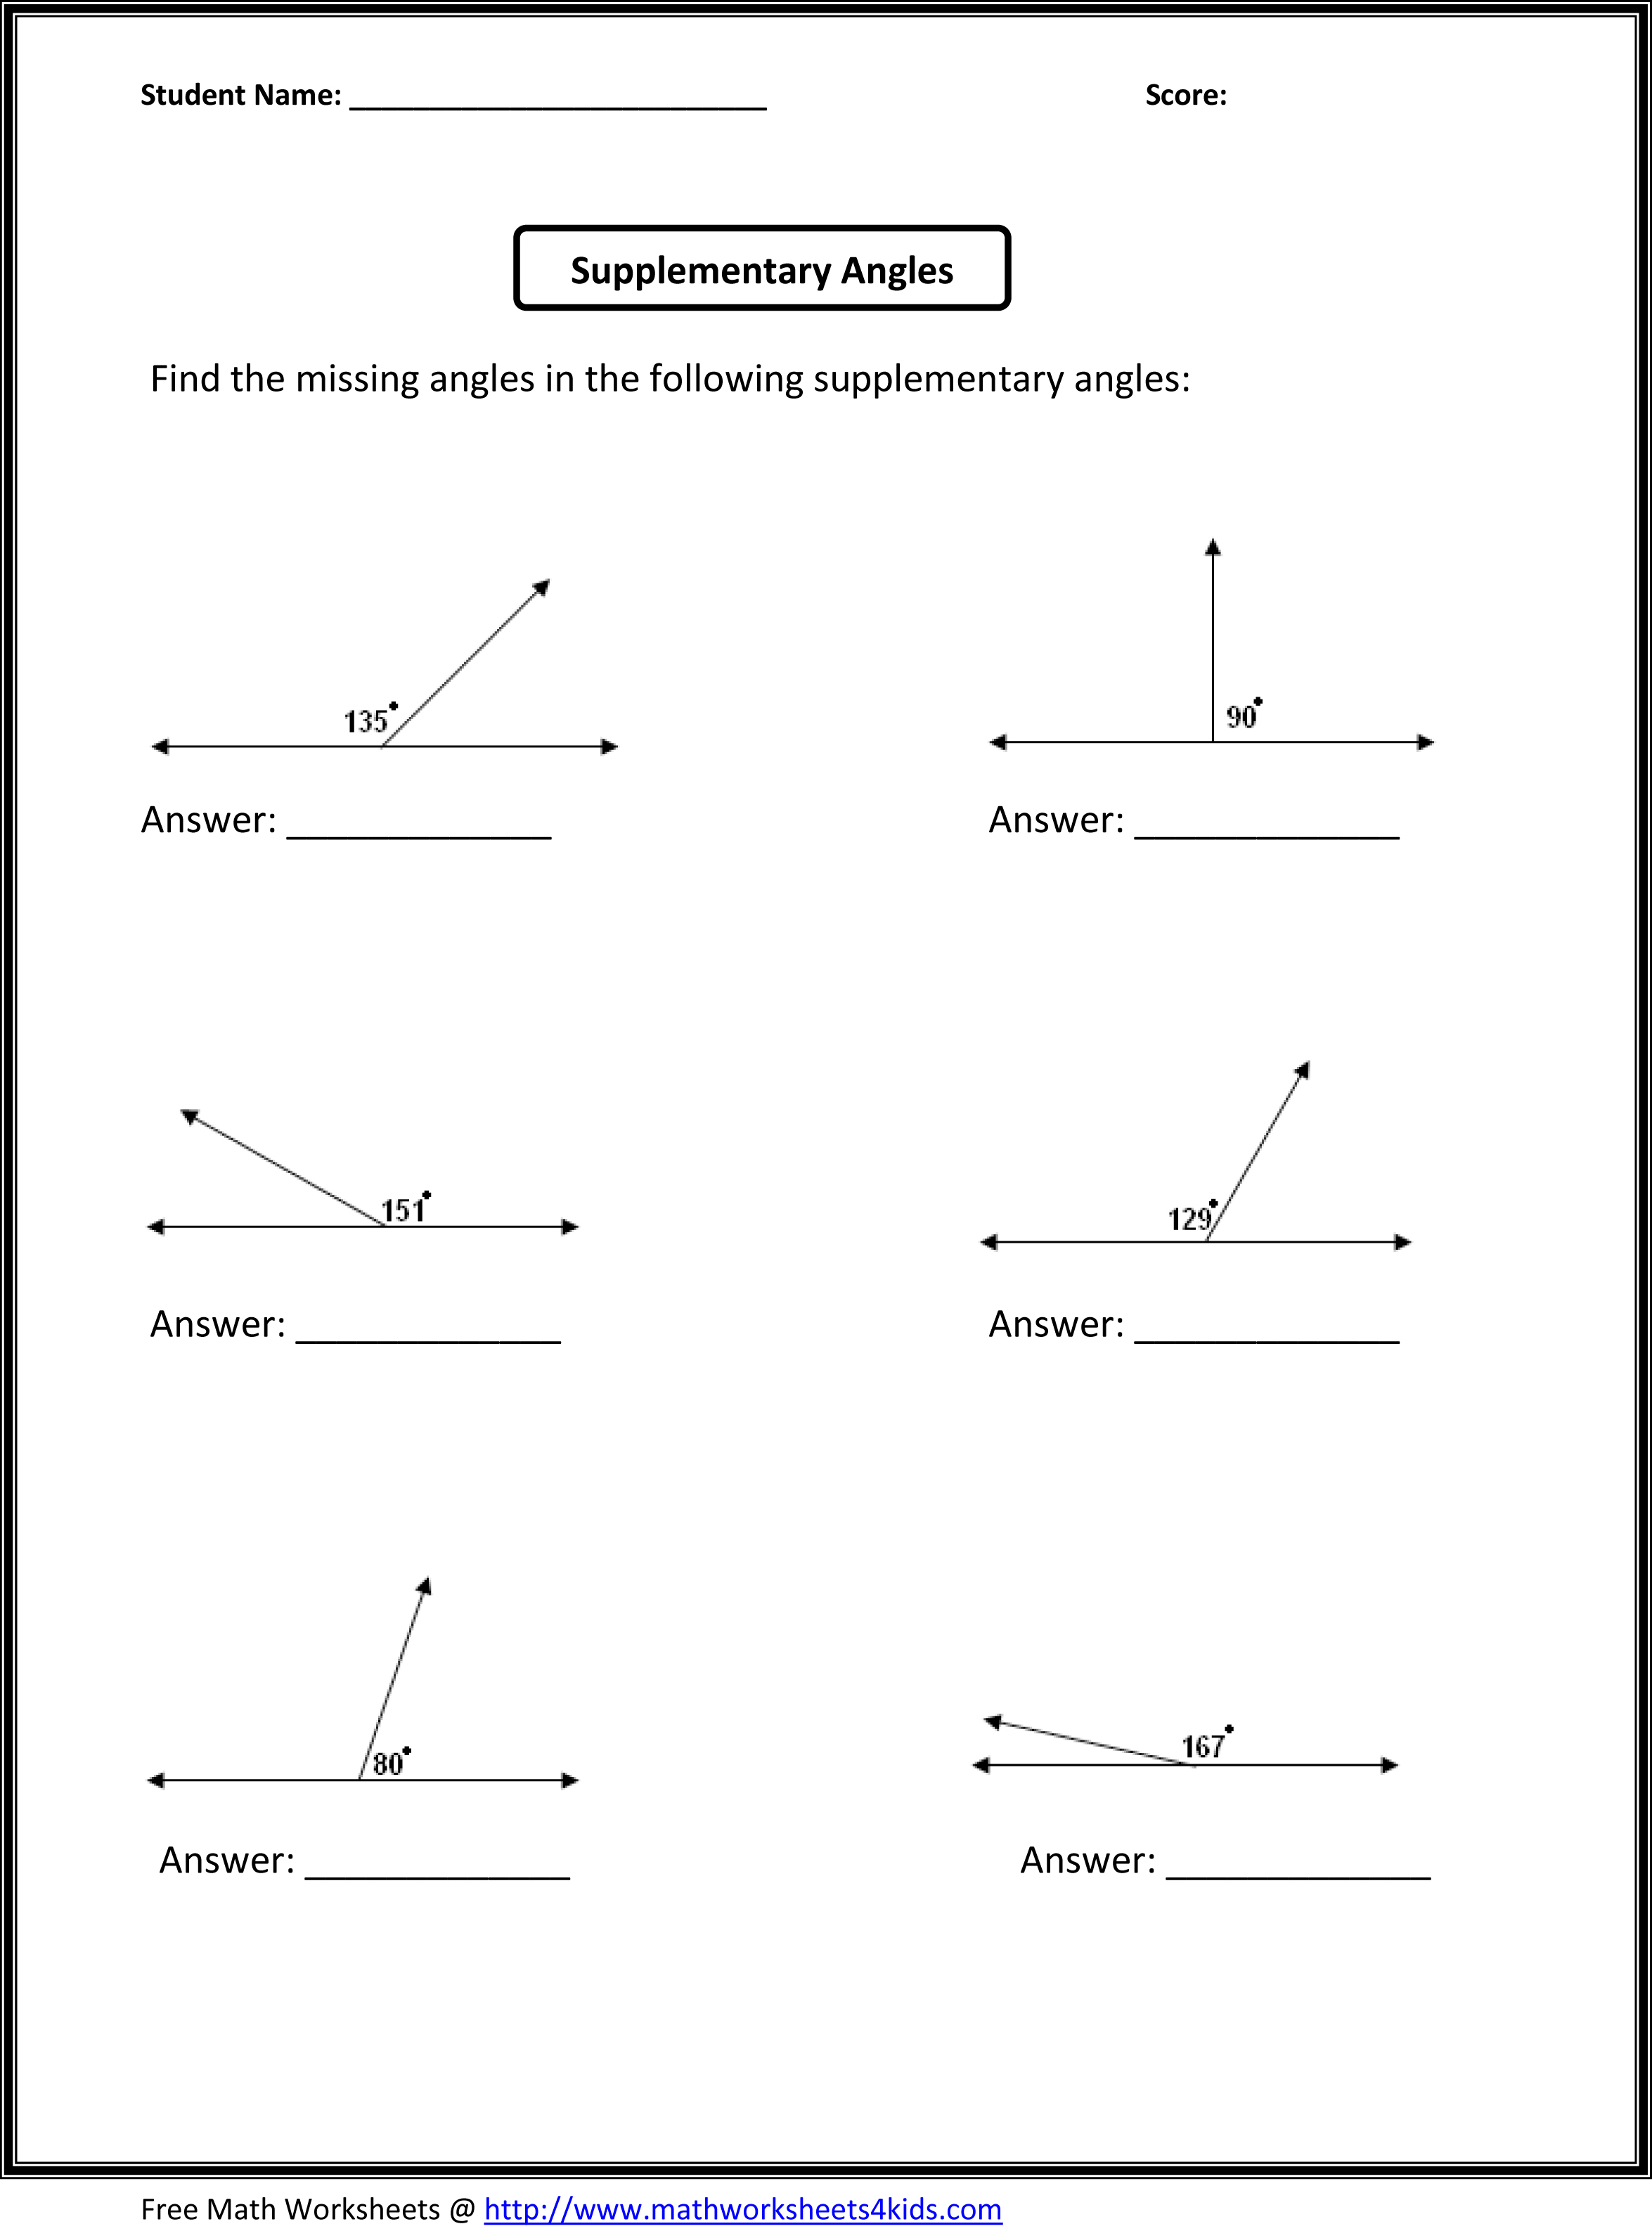 6th Grade Math Worksheets Angles Image